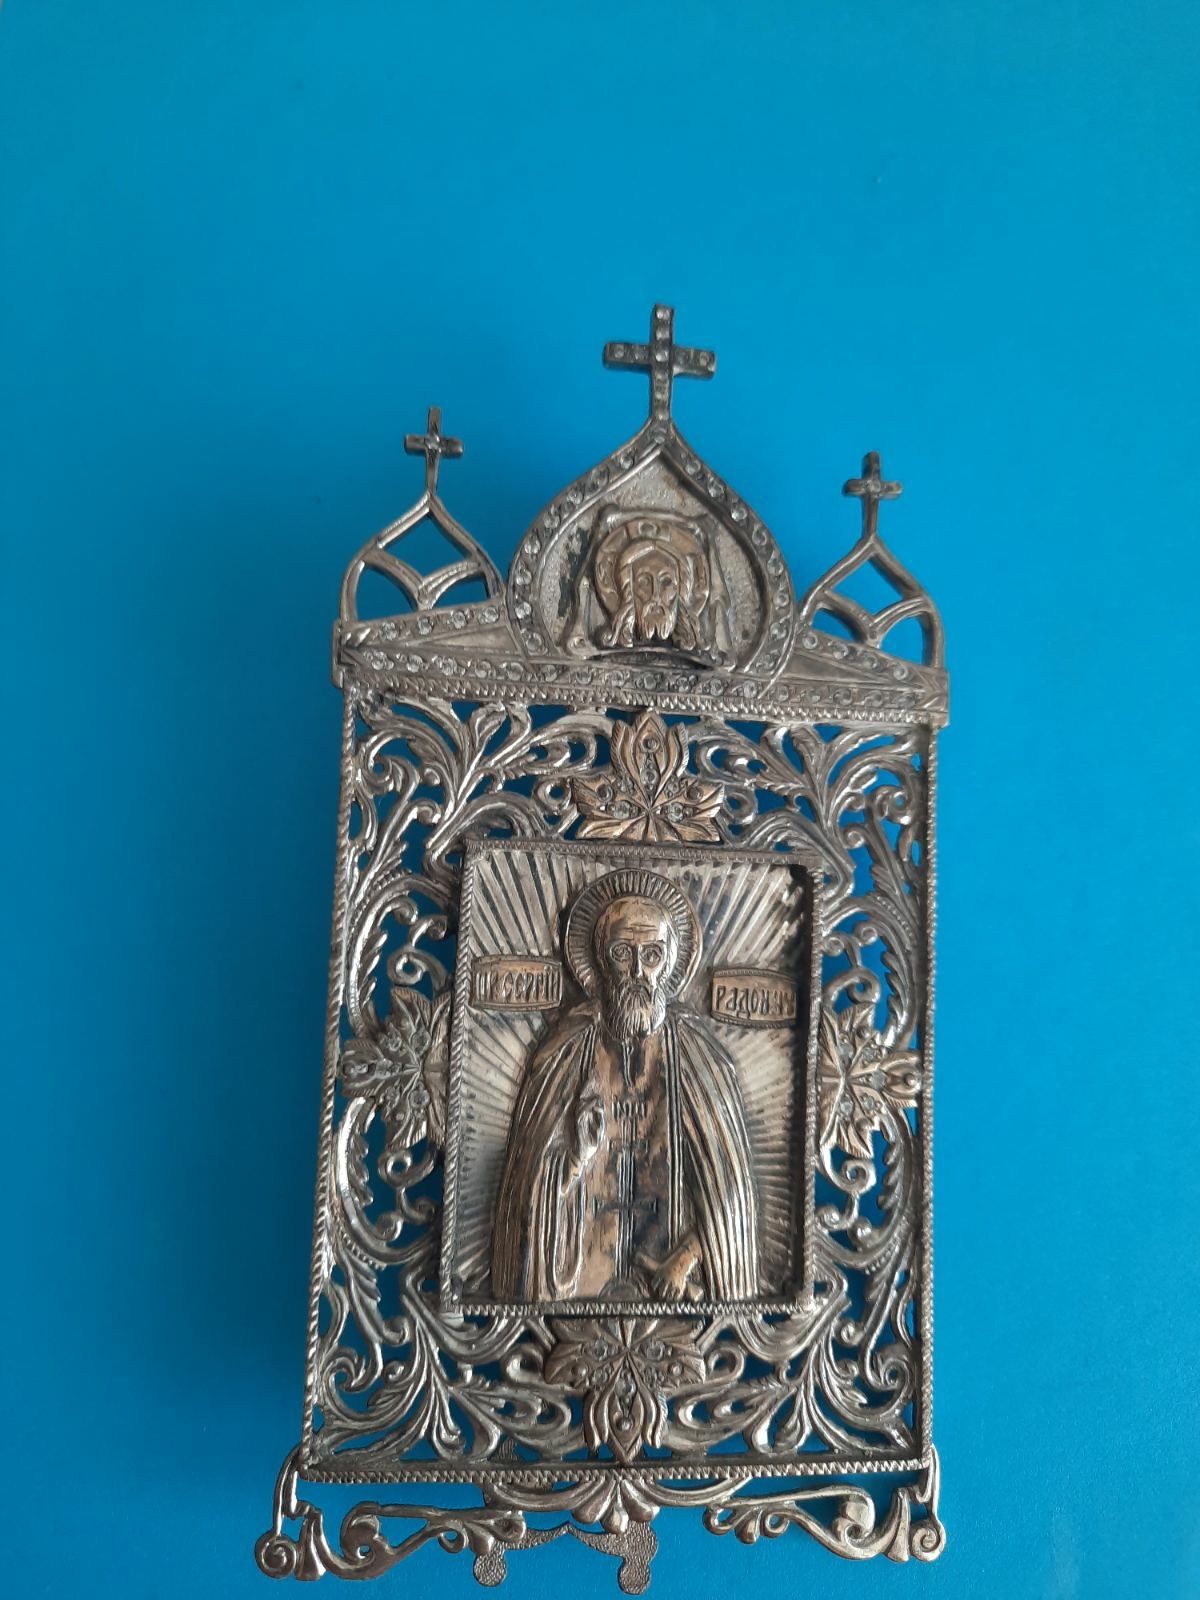 икона Сергей Радонежский,серебрянная с позолотой.
925 проба.
украшена